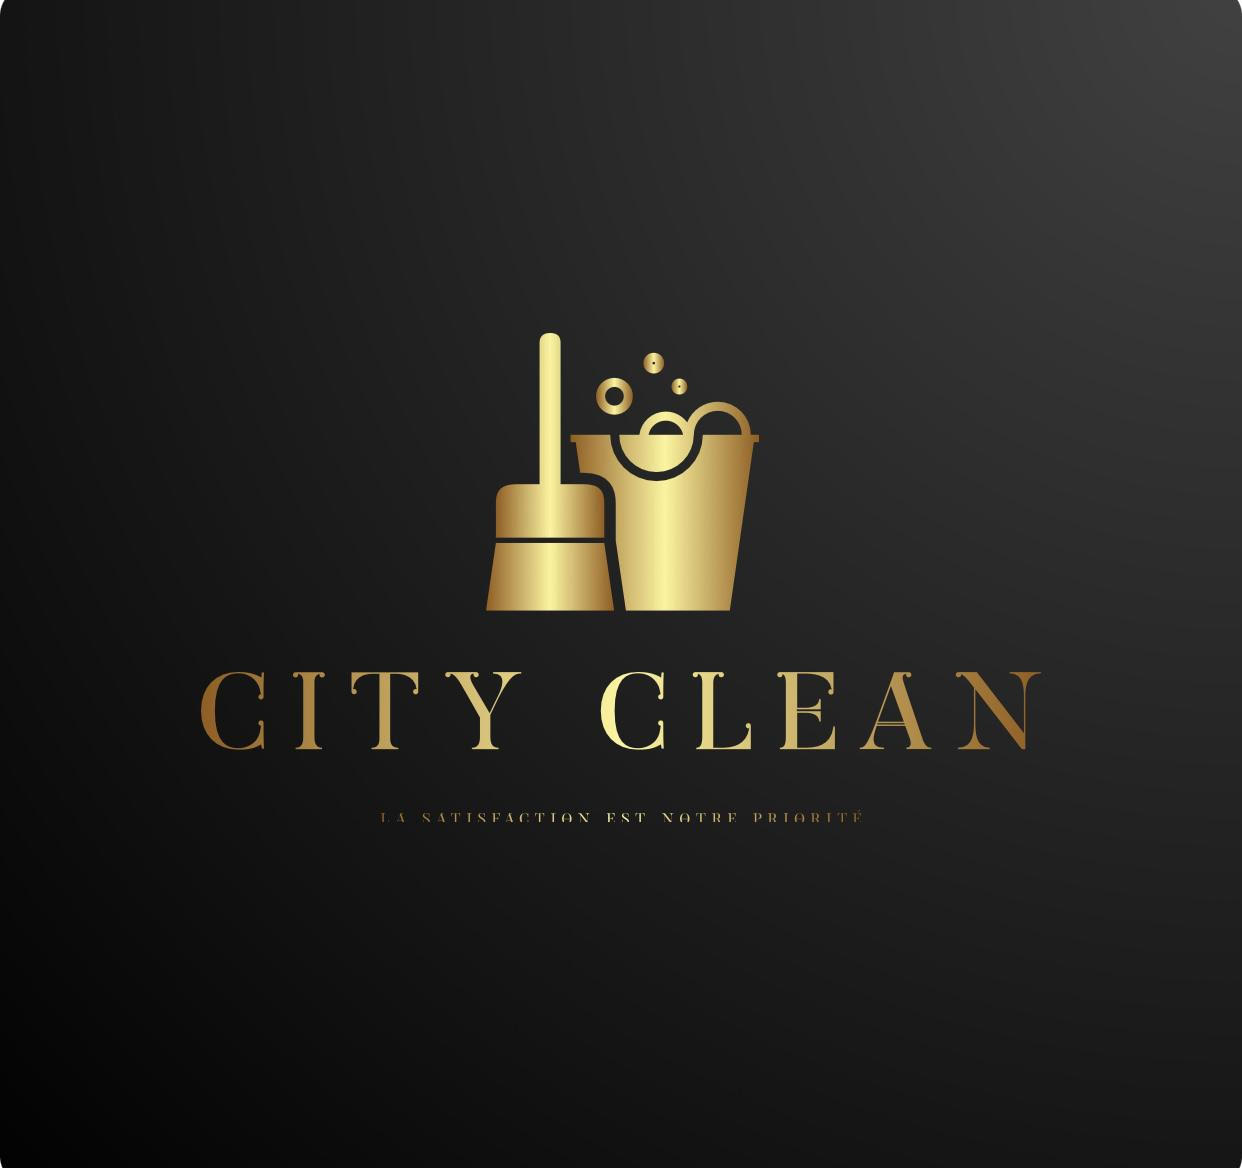 City clean est une société multi services spécialisée dans les travaux